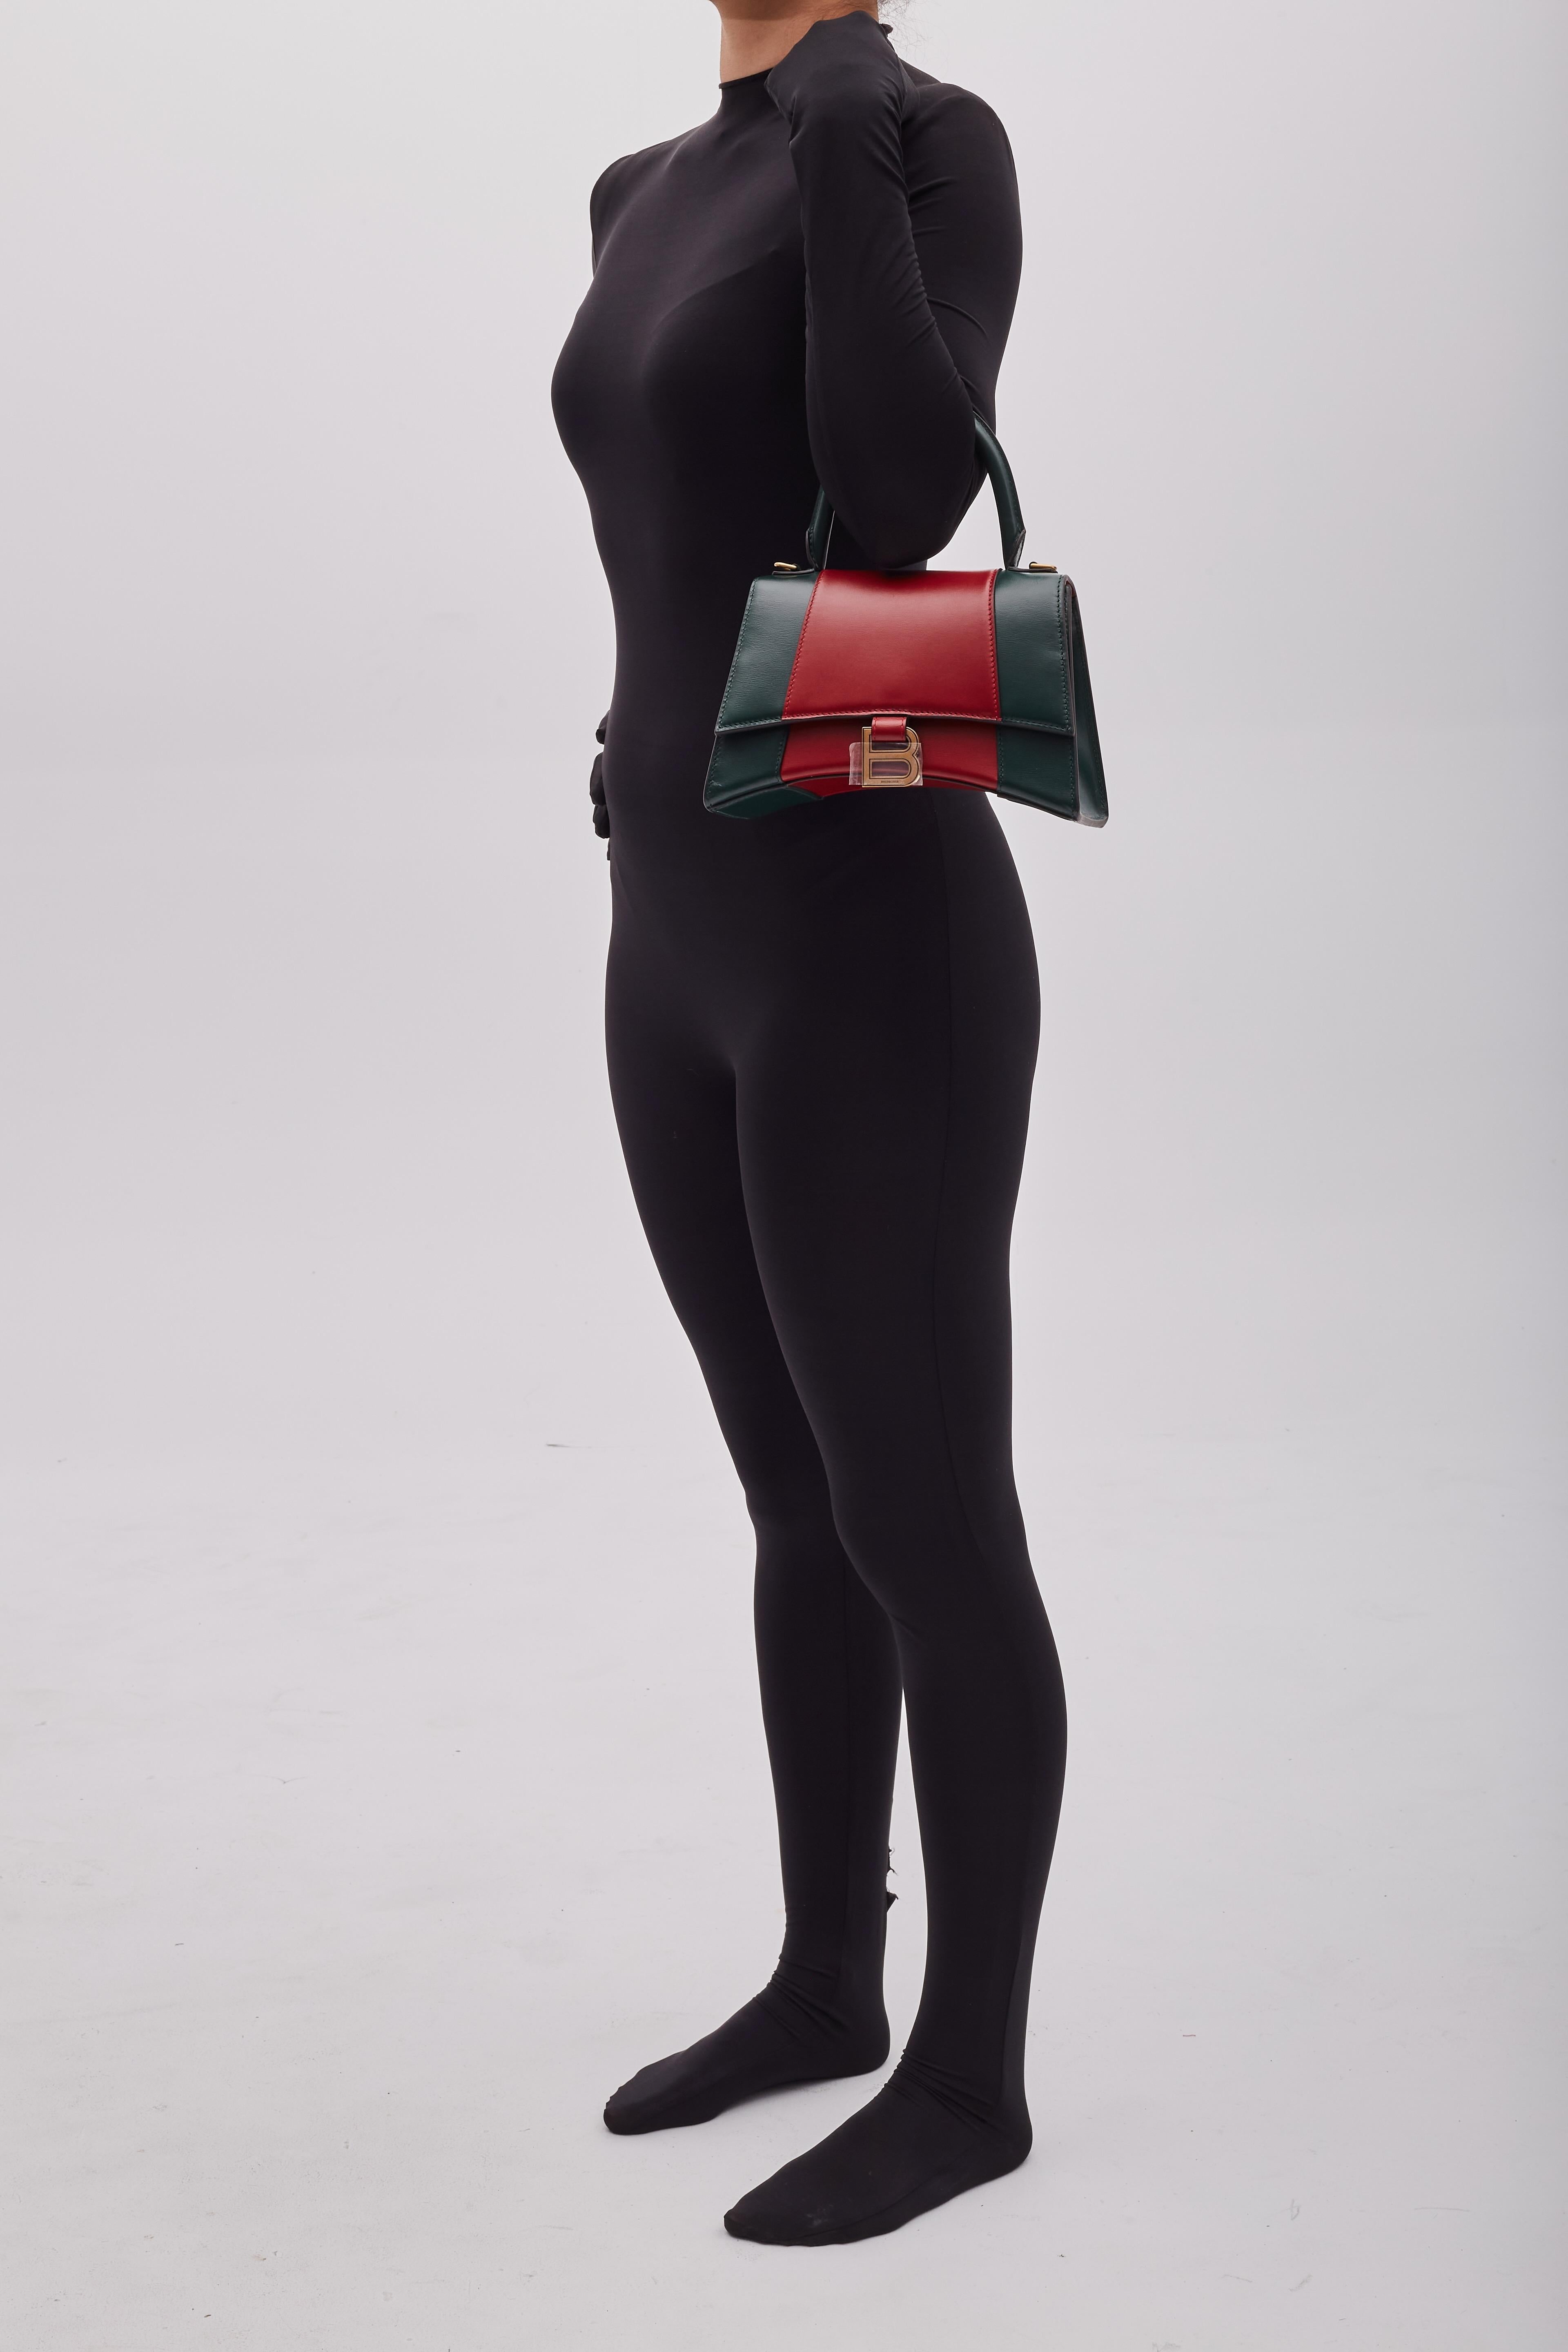 Das Hacker-Projekt. Alessandro Michele in Huldigungsbekundungen. Diese Tasche zeigt die Silhouetten von Balenciaga mit den Farben von Gucci in einzigartigen Kreationen. Die Tasche zeigt die Sanduhrform von Balenciaga in einer klassischen